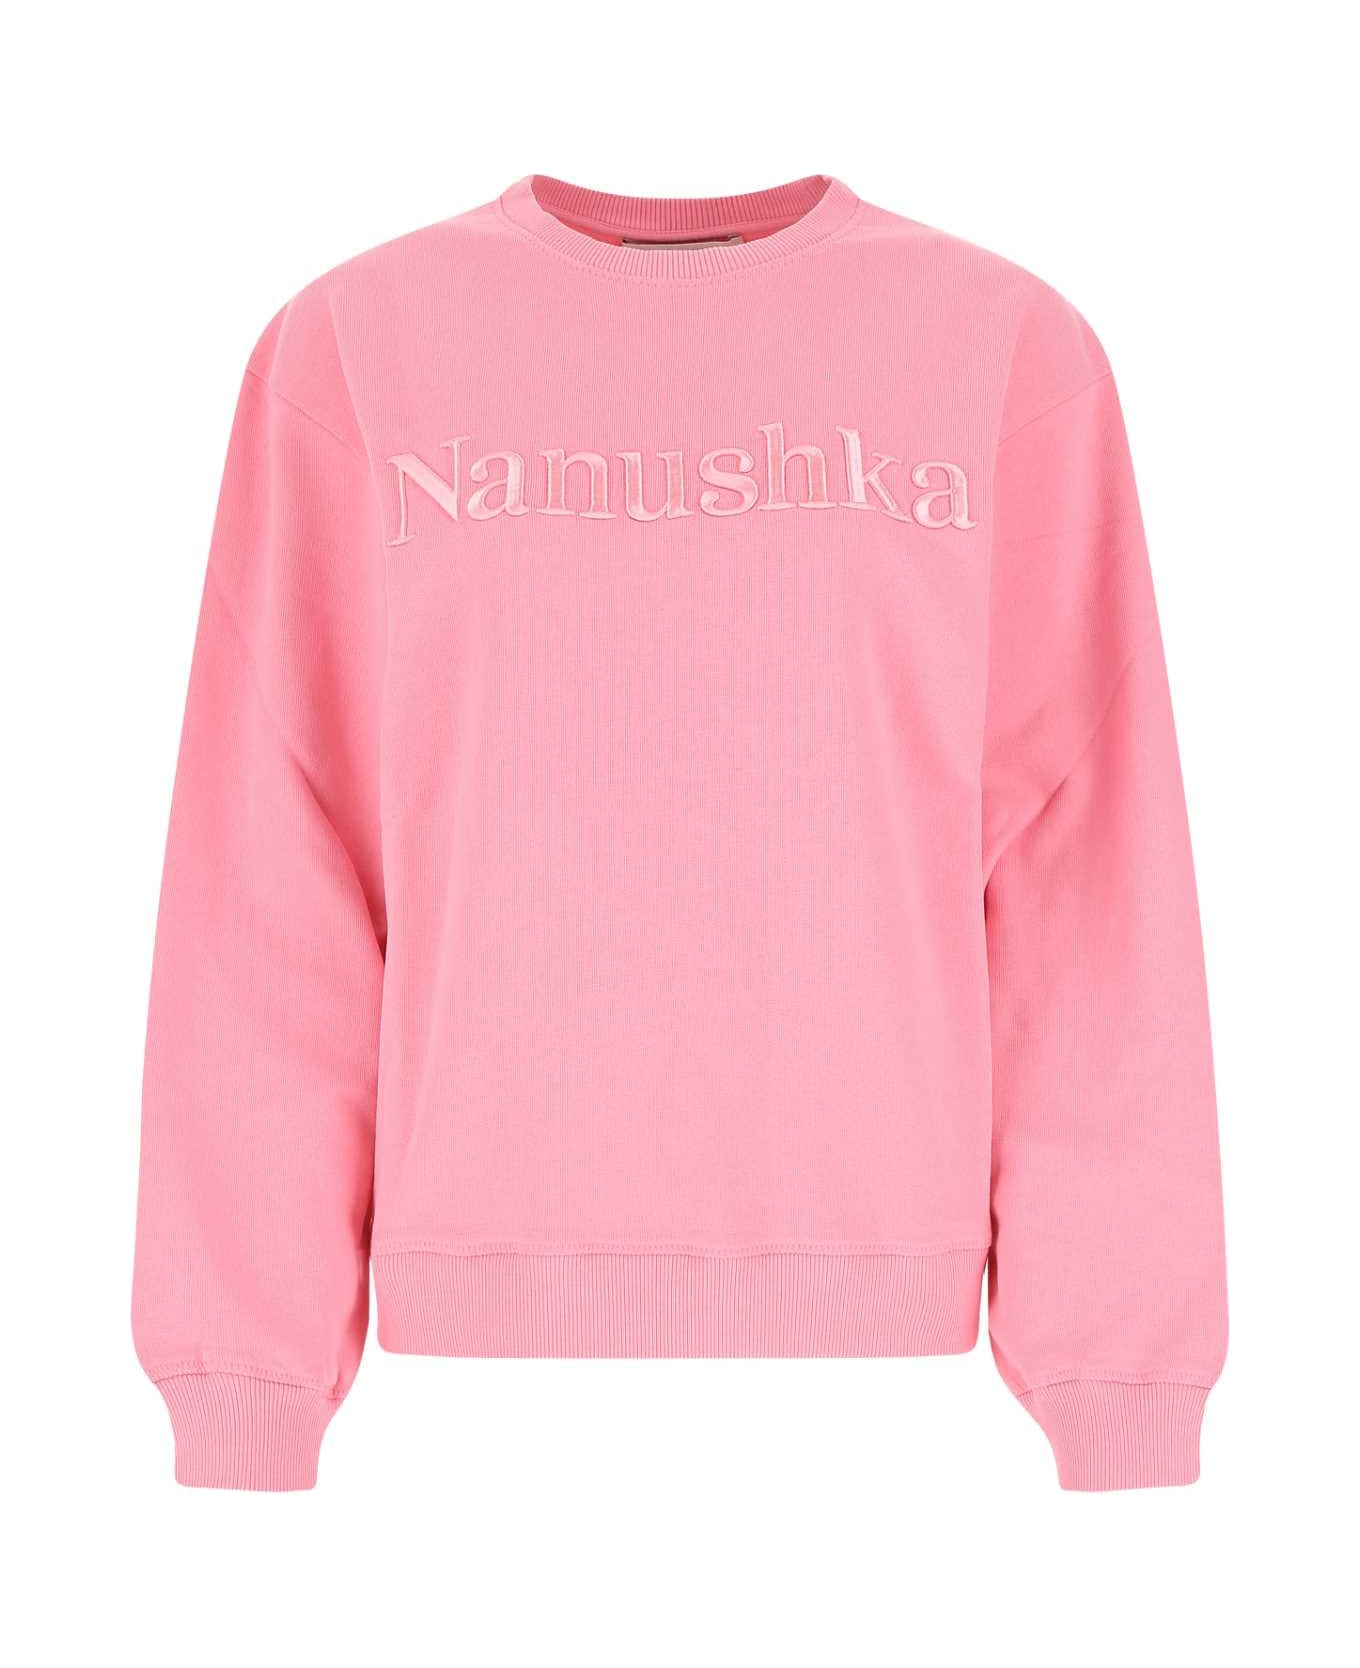 Nanushka Pink Cotton Rey Sweatshirt - PINK